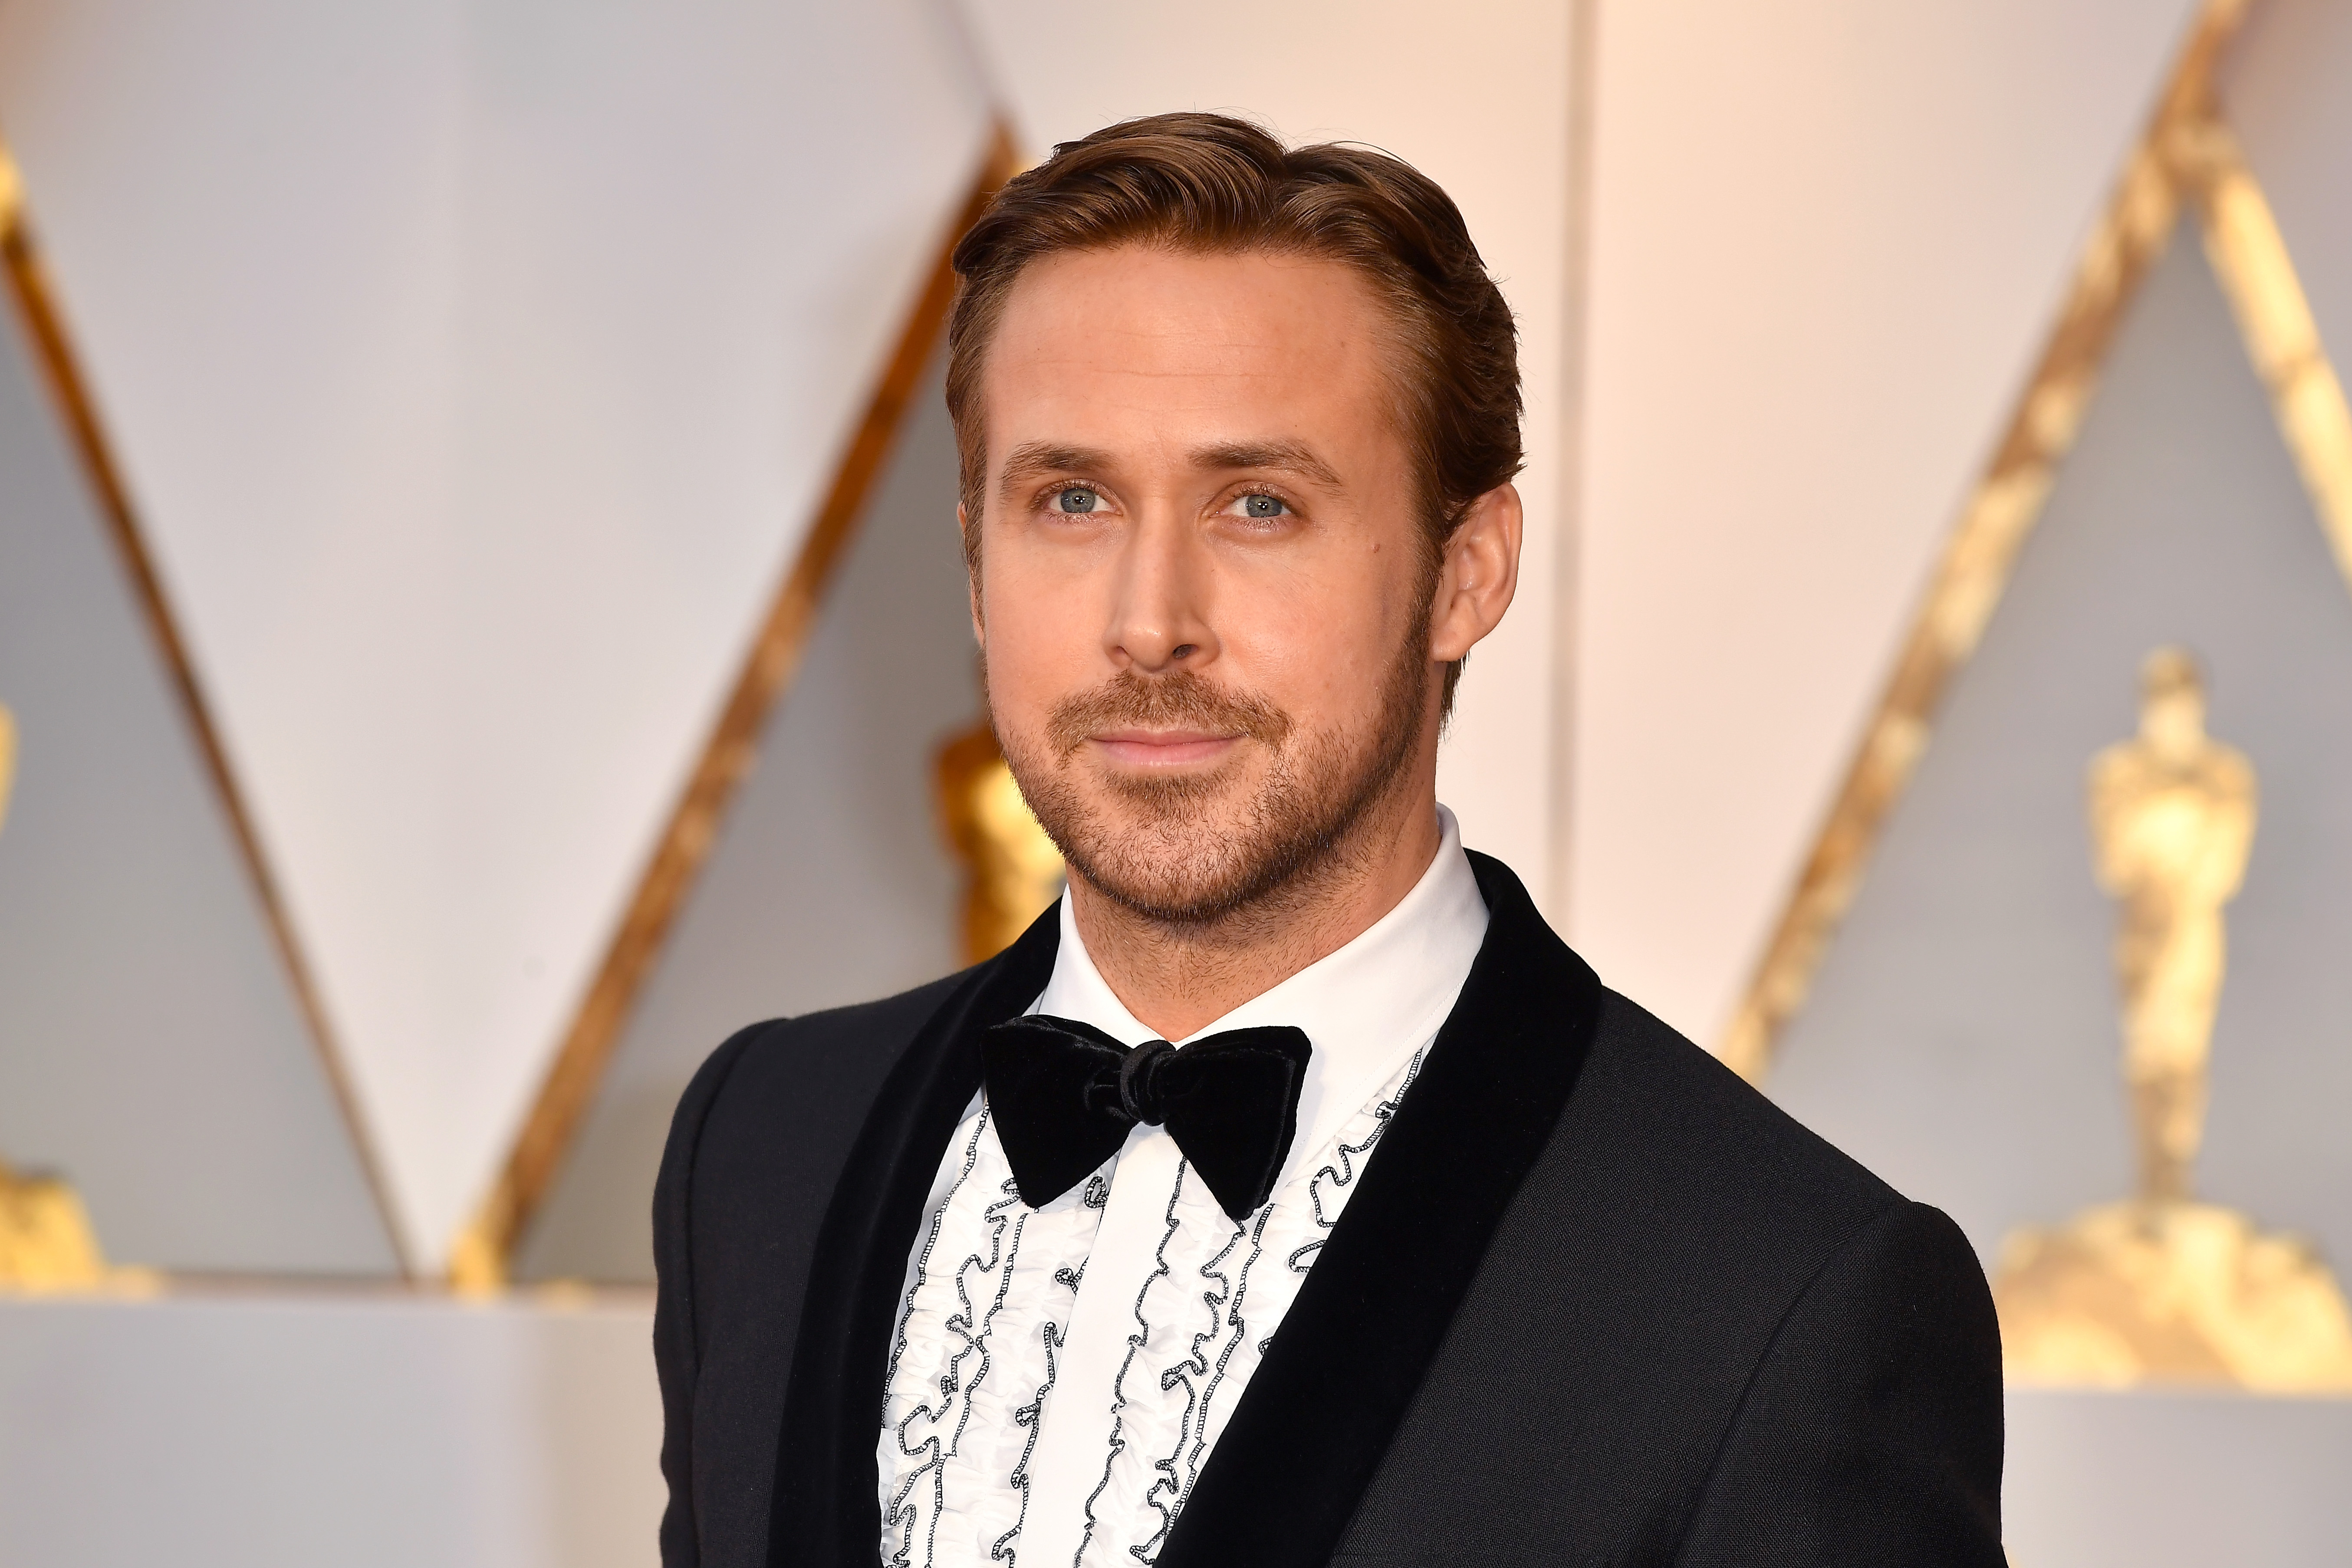 Ryan Gosling in a tuxedo.